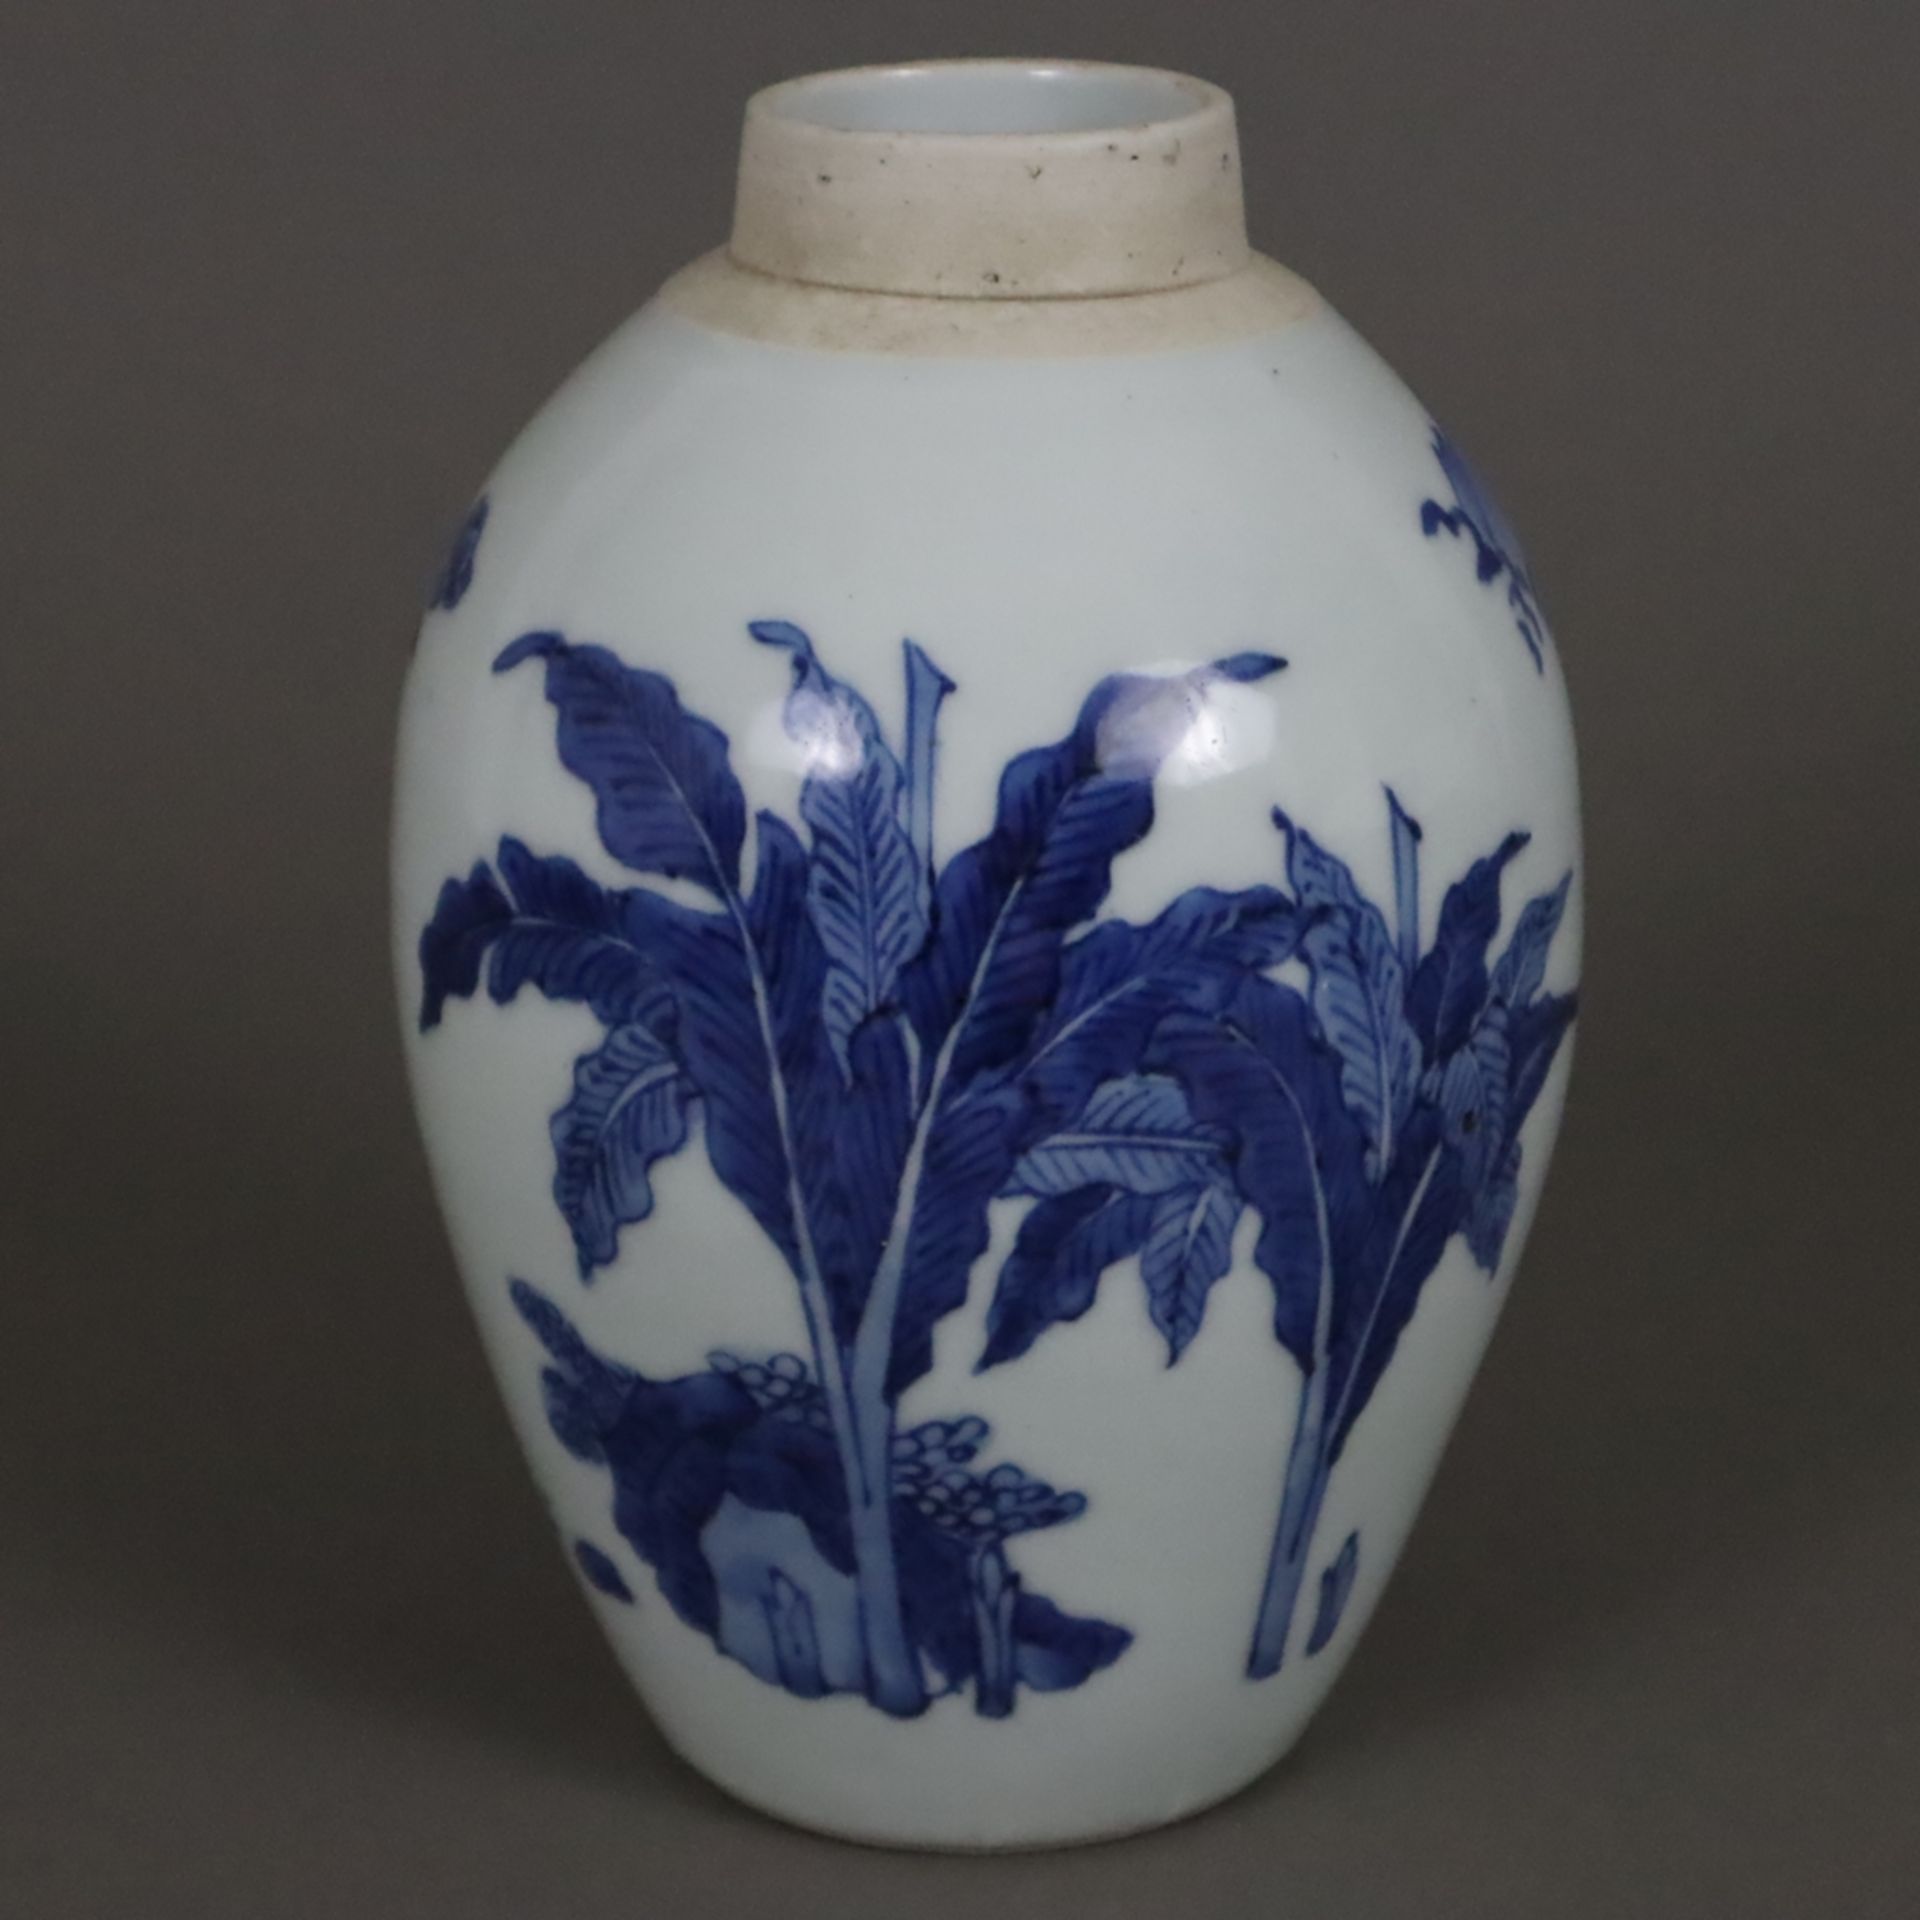 Blau-weiße Vase - China, Qing-Dynastie, Porzellan, ovoide Form, umlaufend in Unterglasurblau bemalt - Image 2 of 8